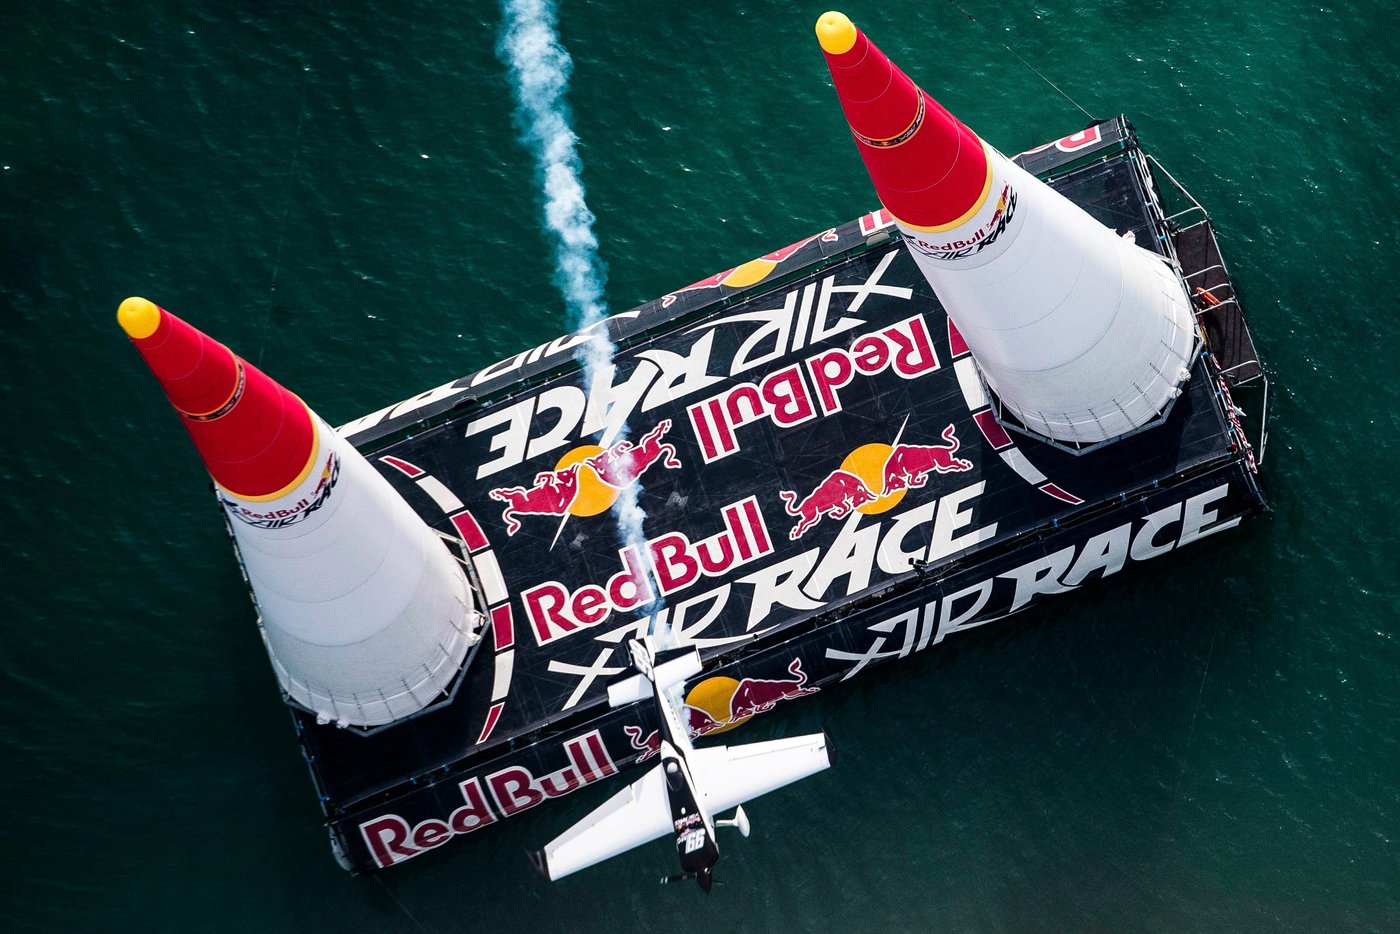 Red Bull Air Race - Abu Dhabi 2016